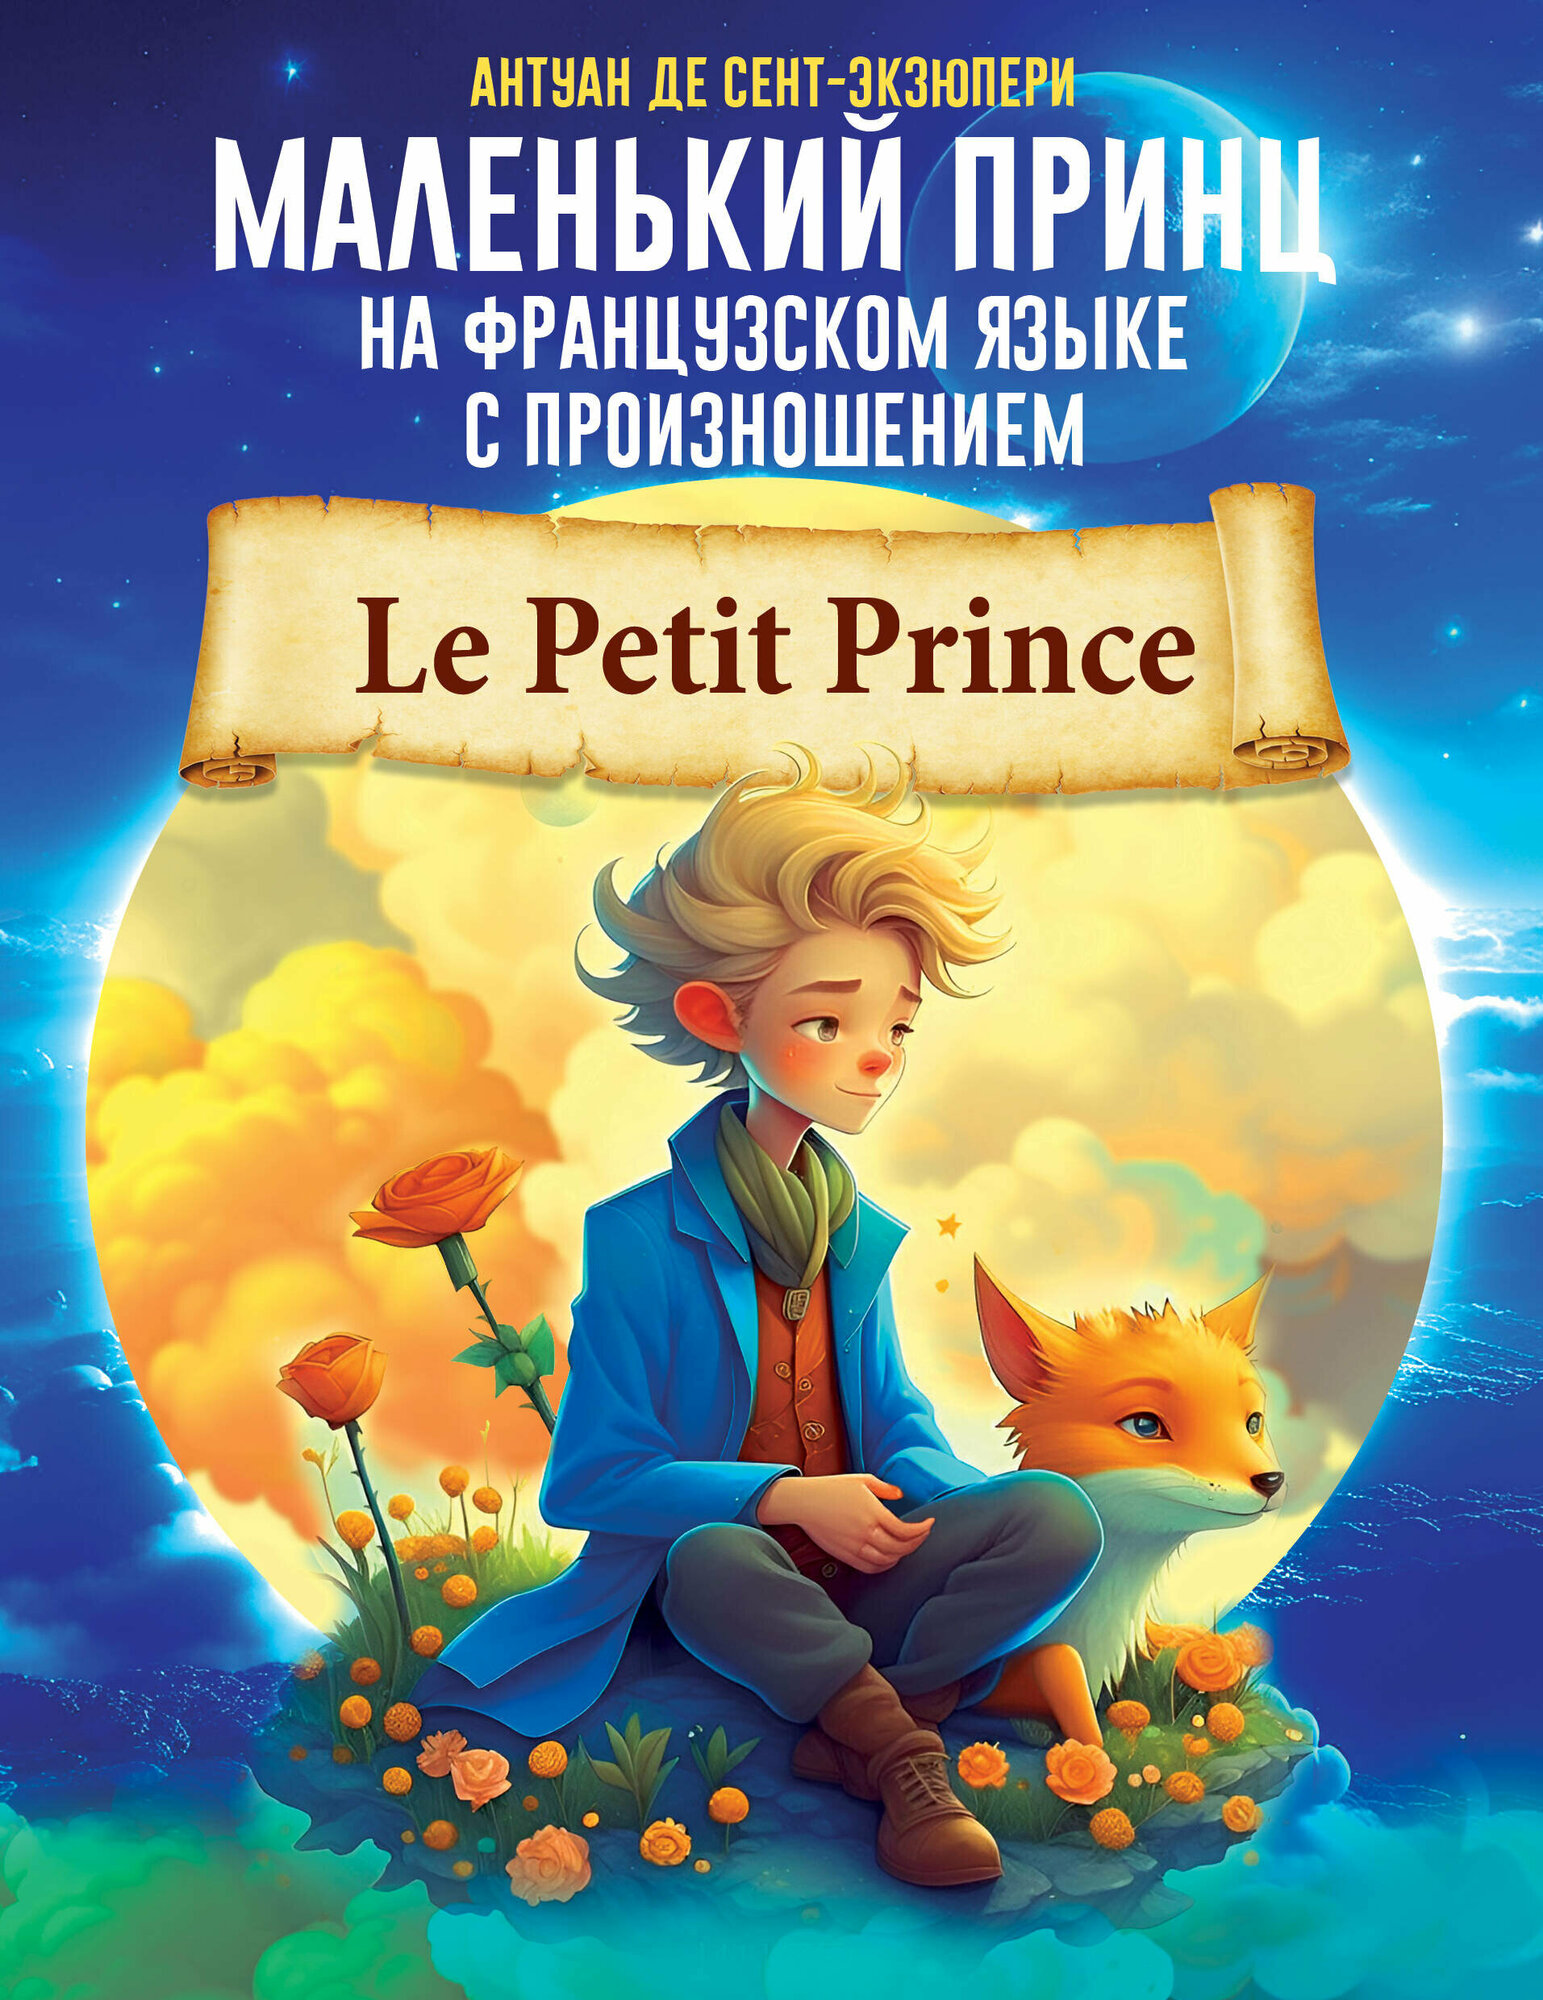 Маленький принц на французском языке с произношением Сент-Экзюпери А. де